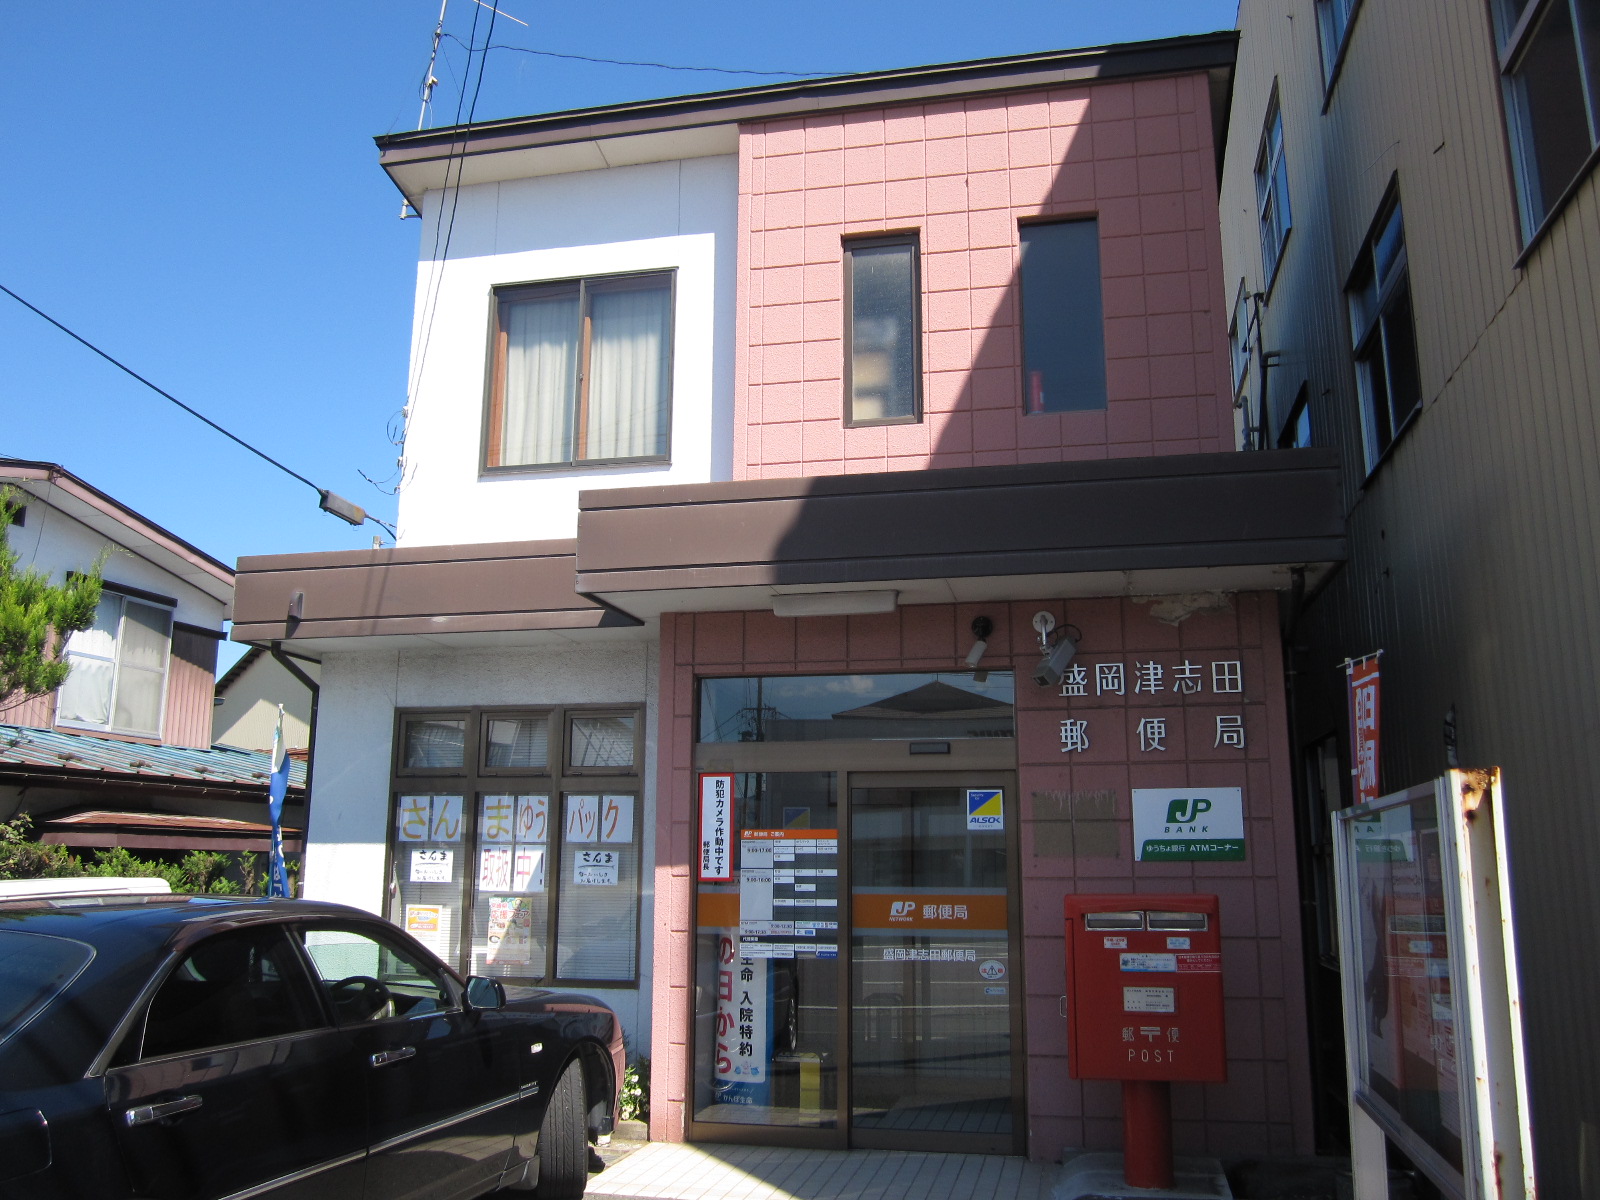 post office. 1196m to Morioka Tsushida post office (post office)